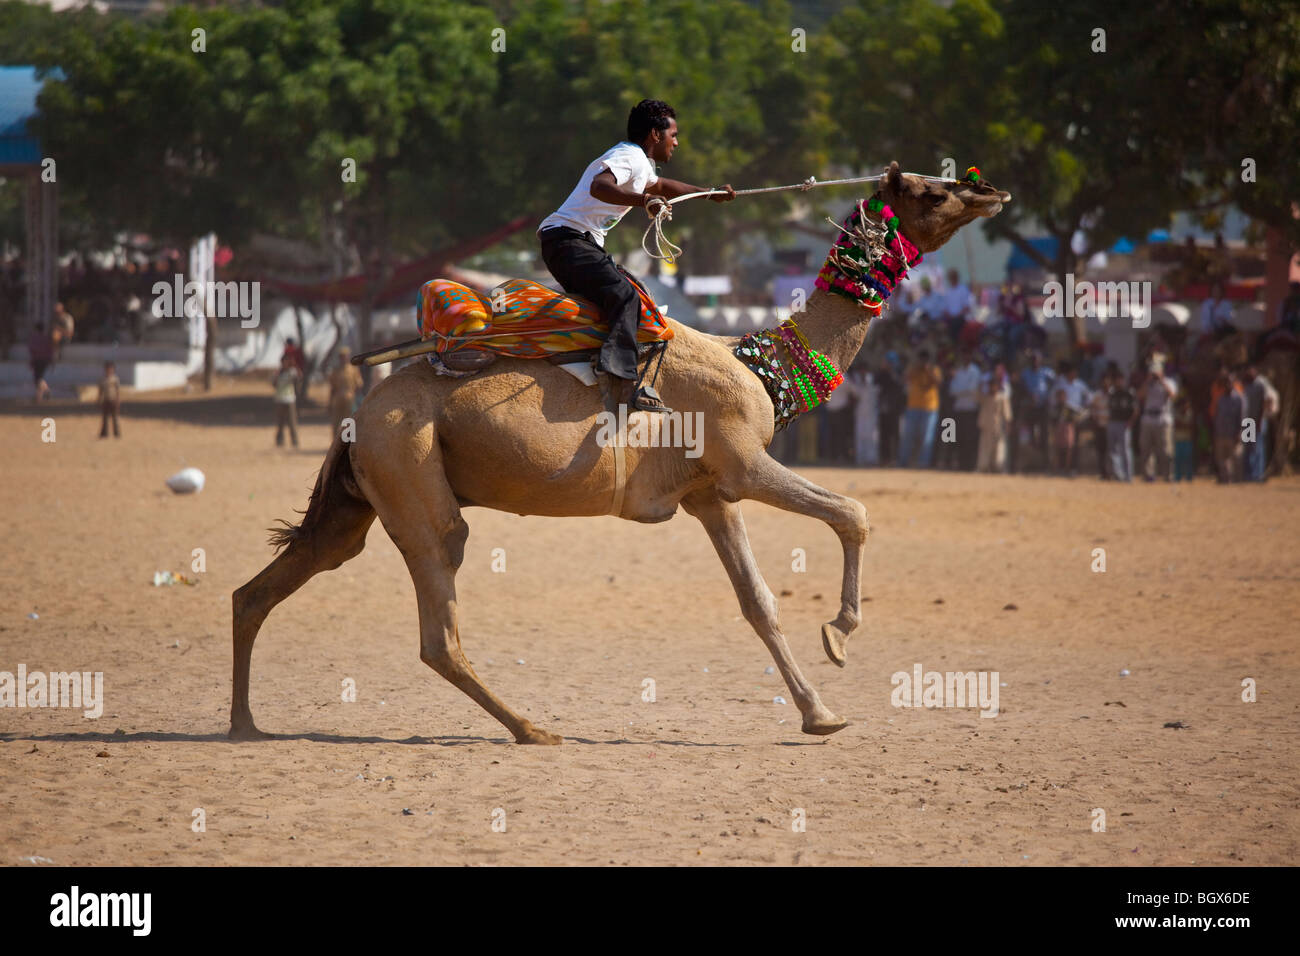 Les courses de chameaux à la Camel Fair de Pushkar Inde Banque D'Images